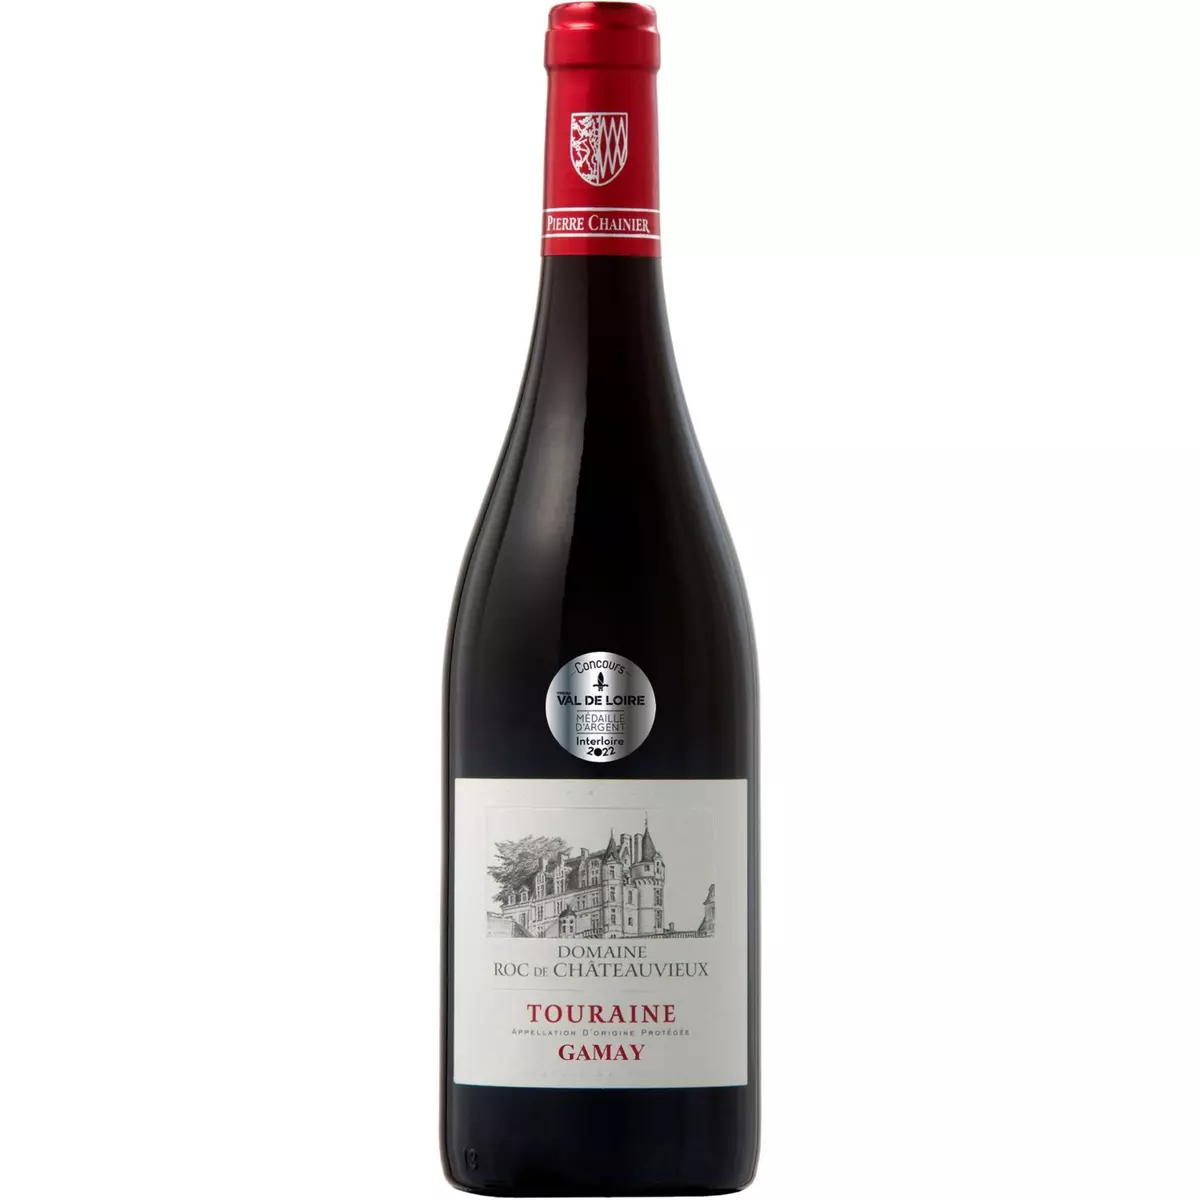 Vin rouge AOP Gamay Touraine Domaine Roc de Châteauvieux 75cl